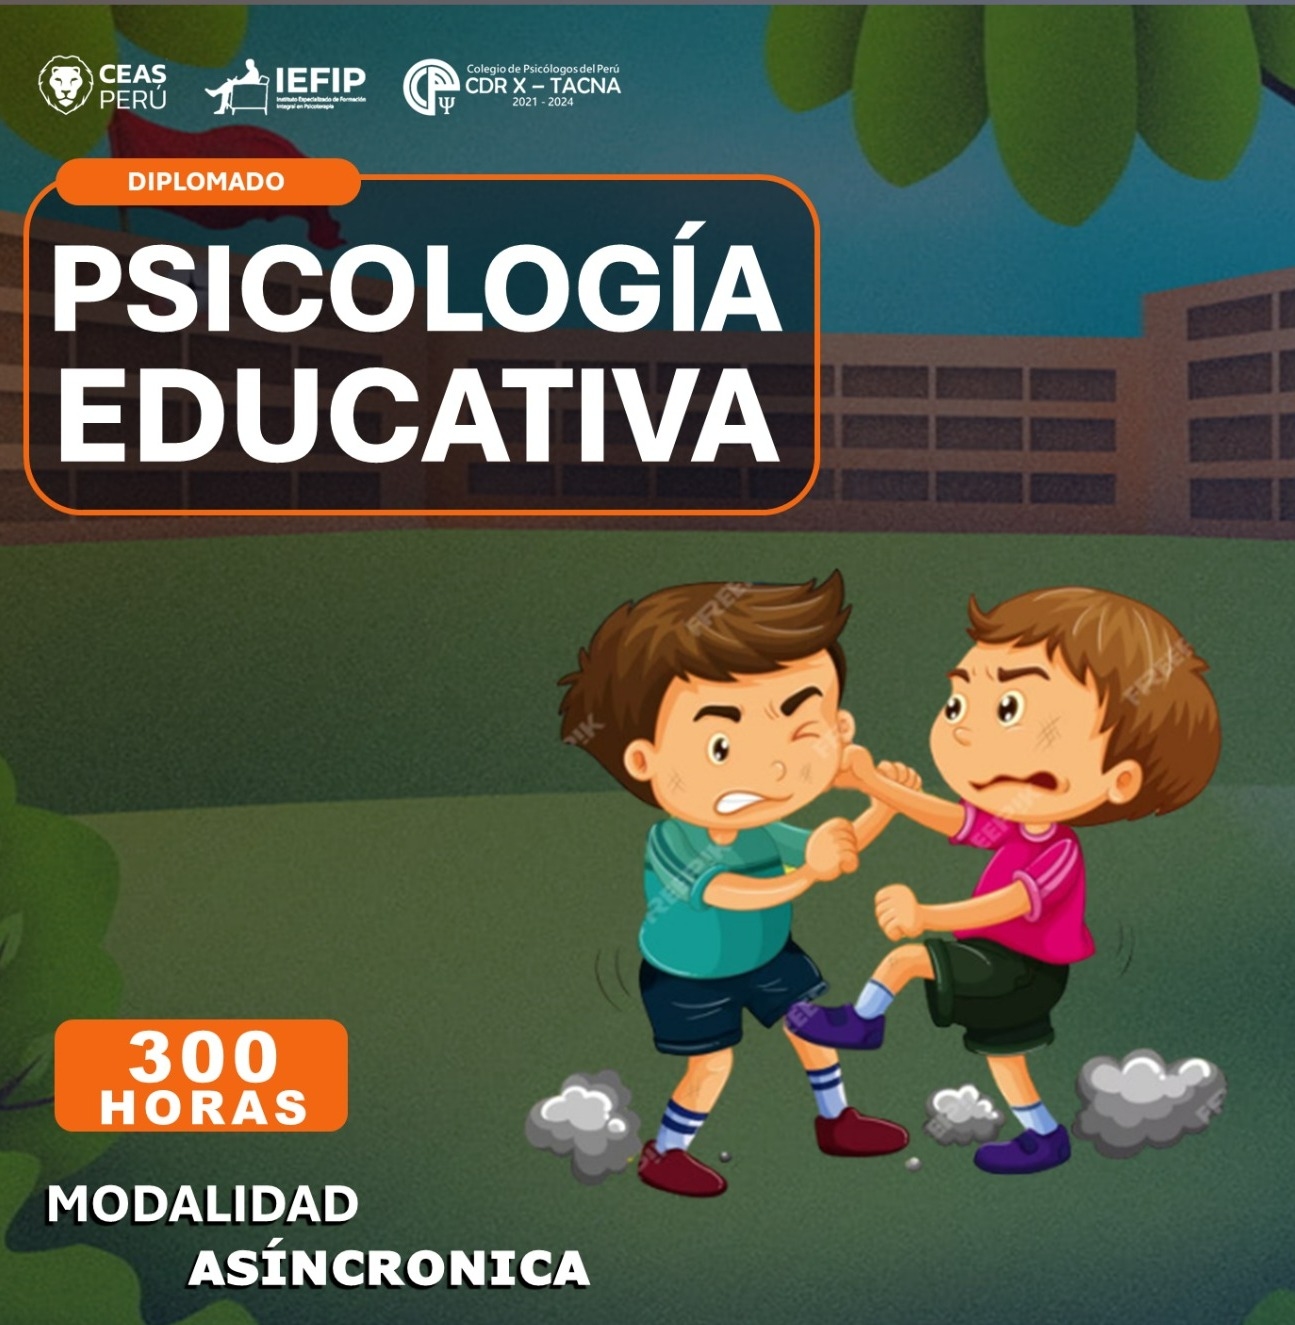 Course Image DIPLOMADO PSICOLOGÍA EDUCATIVA